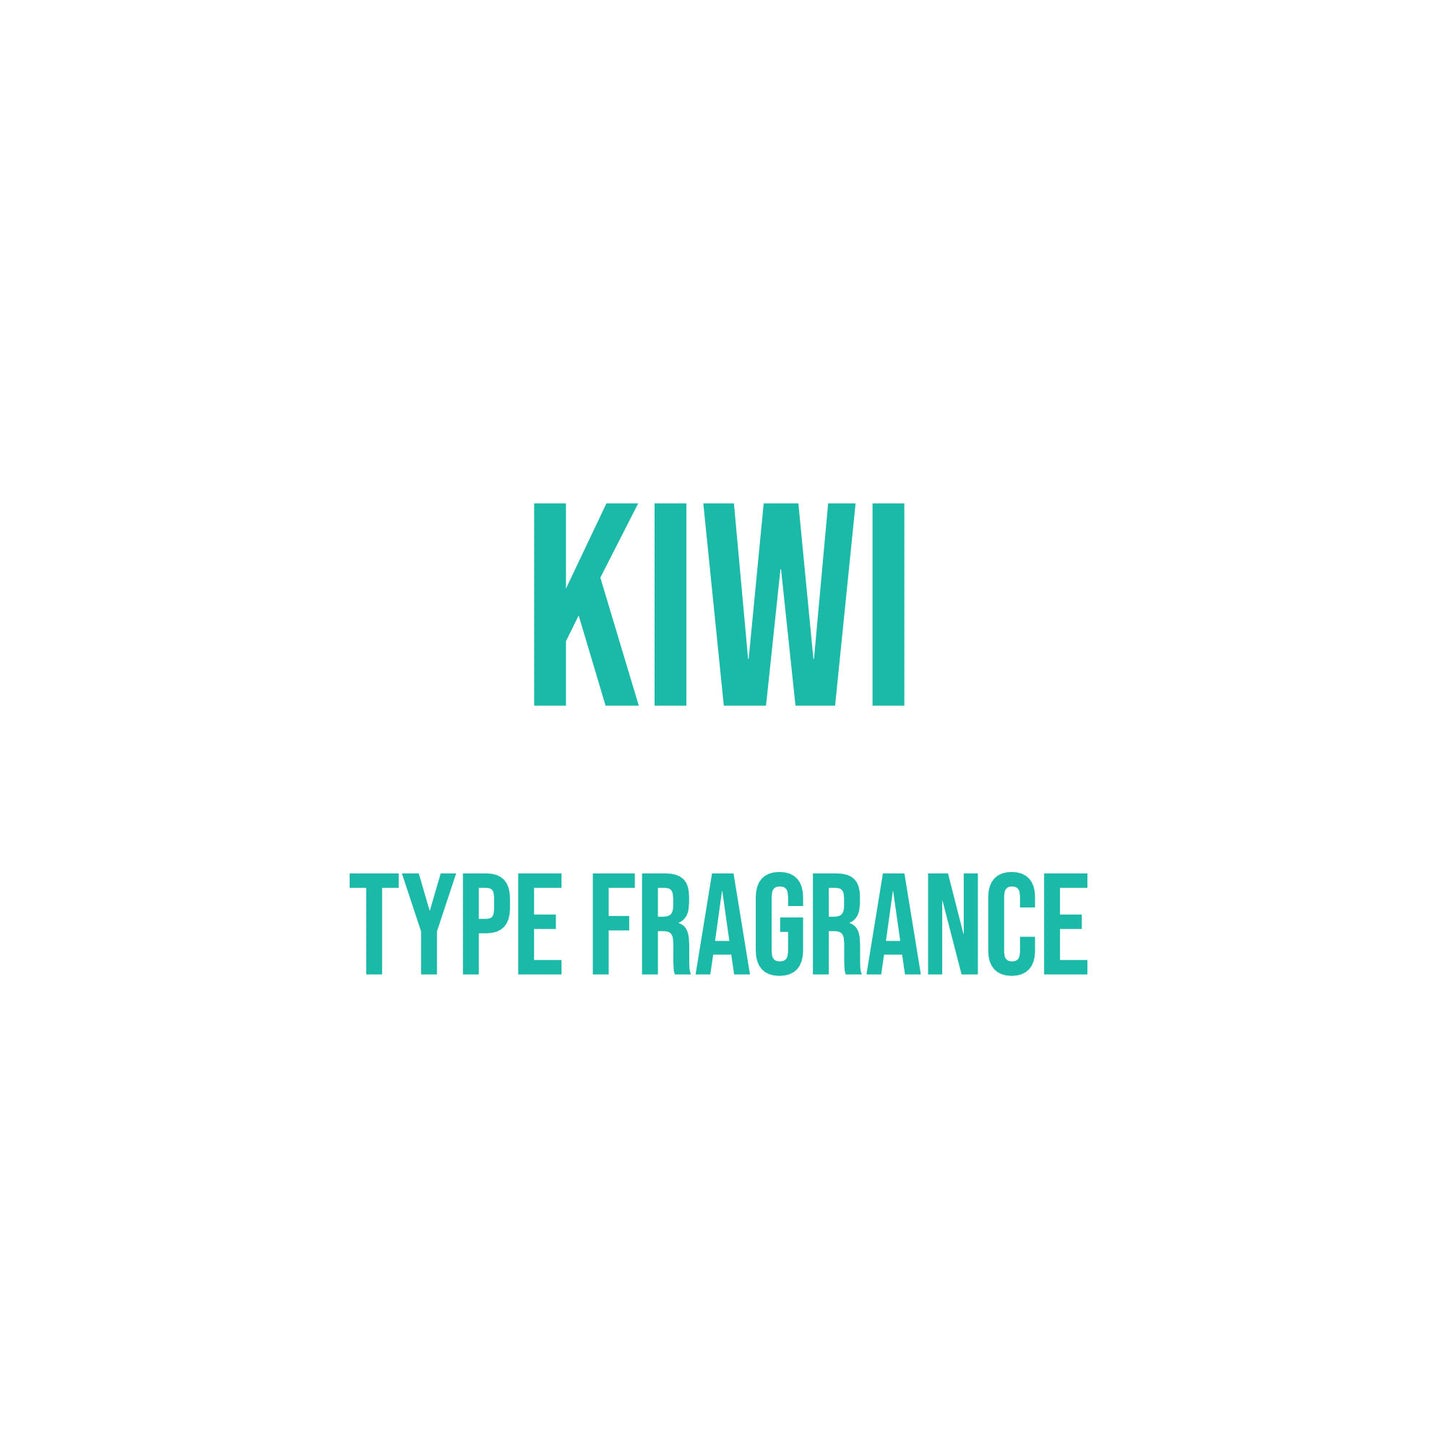 Kiwi Type Fragrance